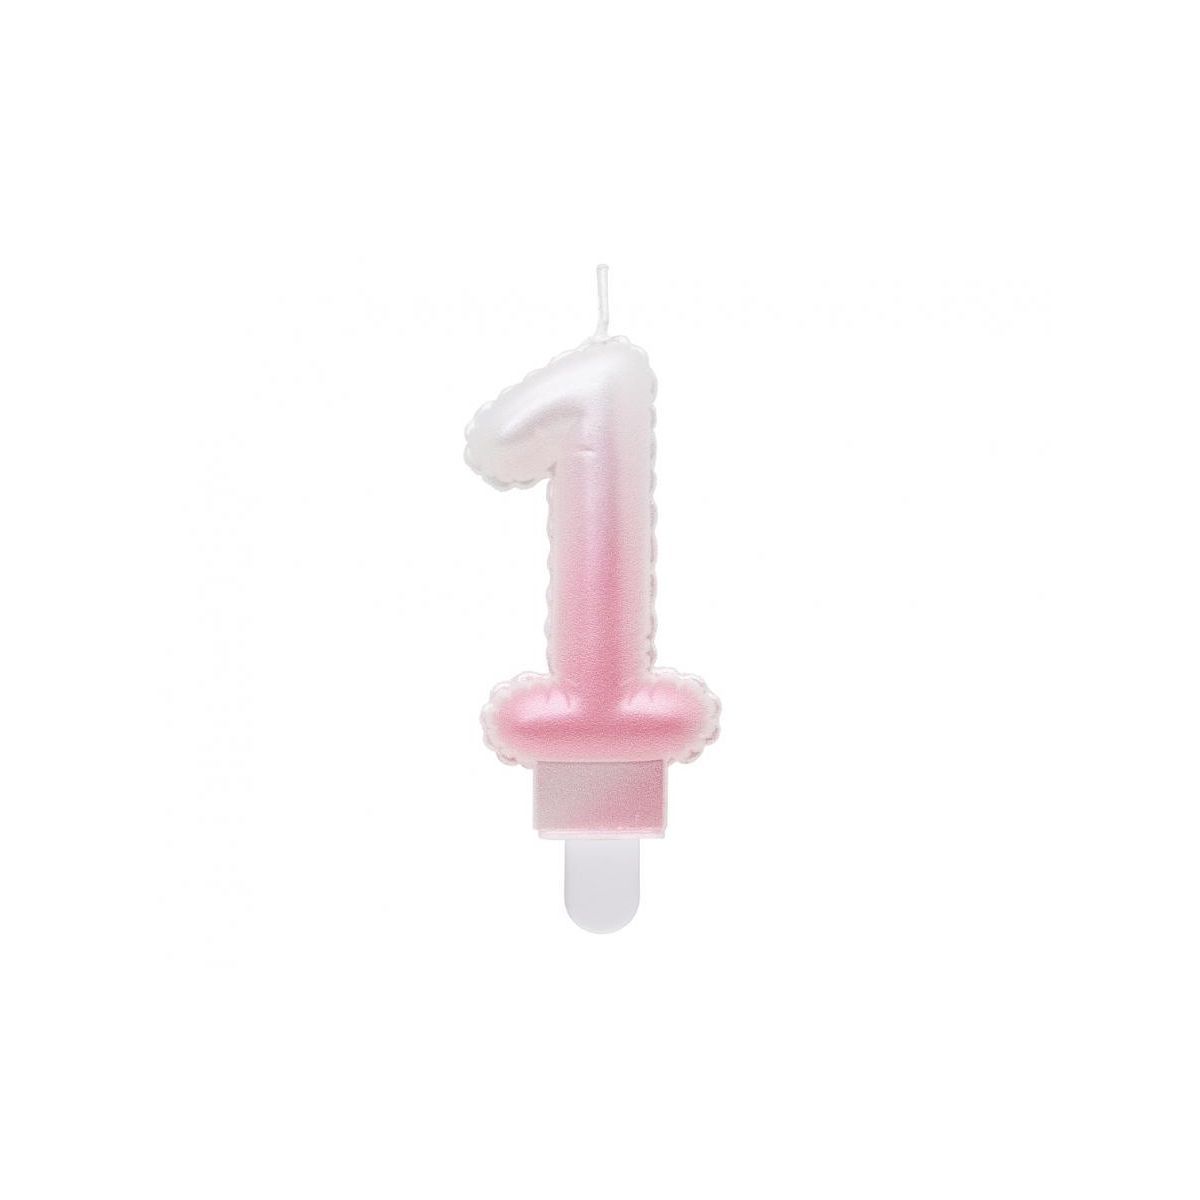 Świeczka urodzinowa cyferka 1, ombre, perłowa biało-różowa, 7 cm Godan (SF-PBR1)